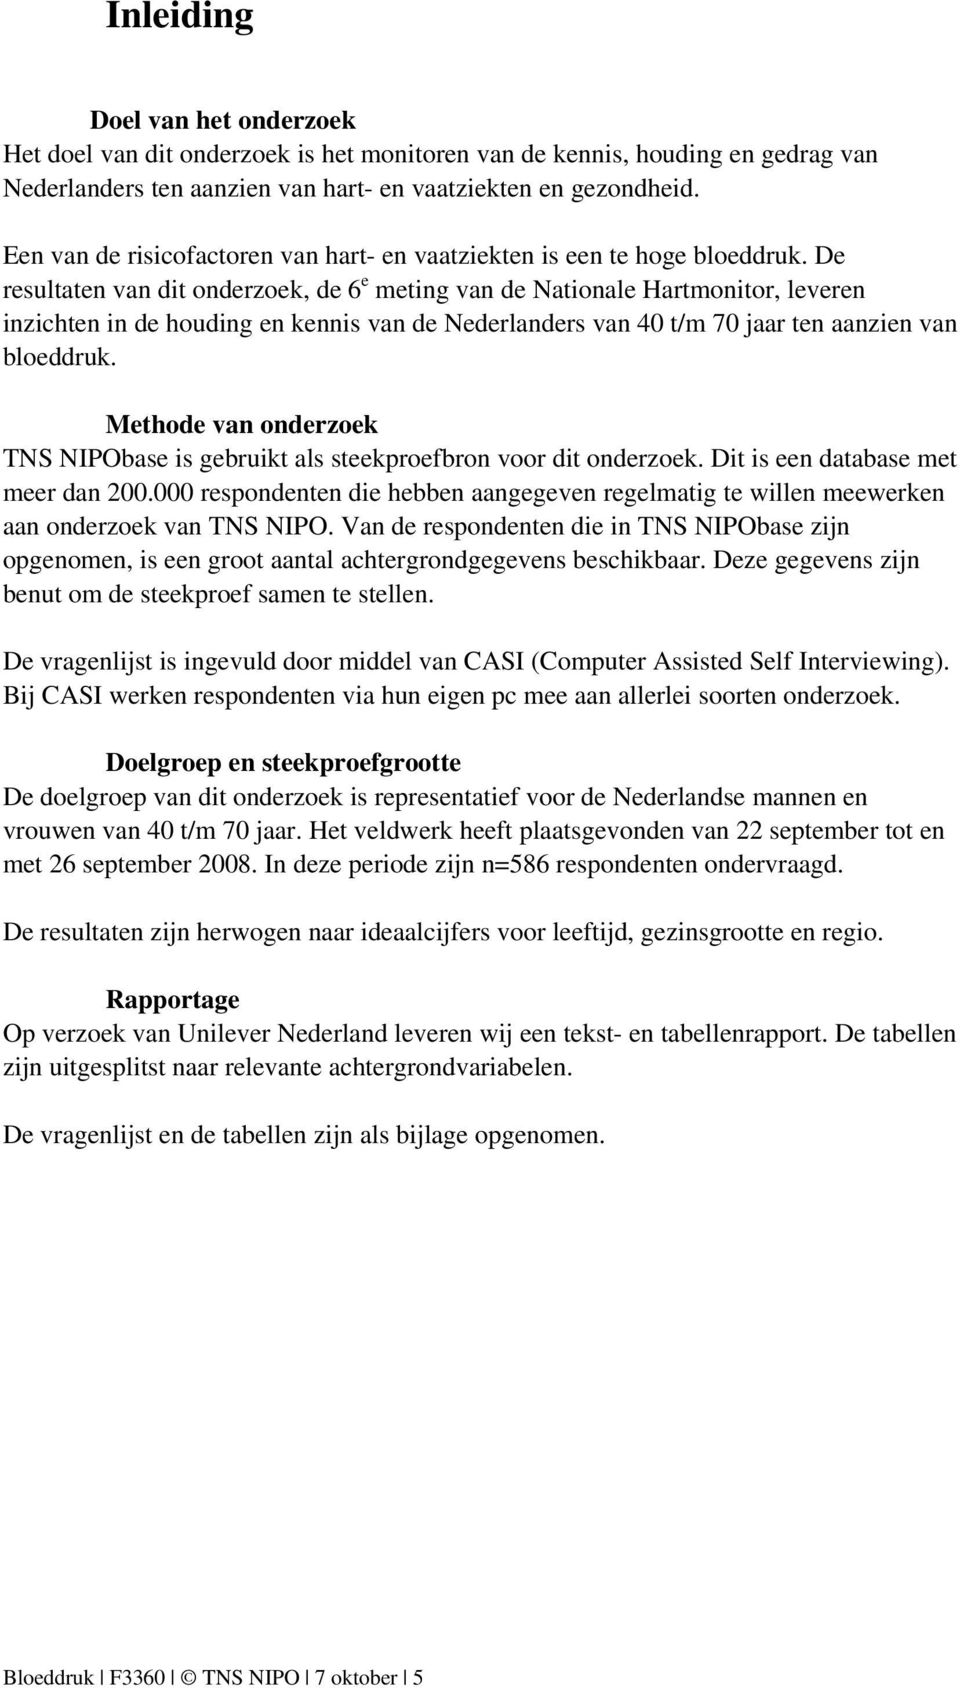 De resultaten van dit onderzoek, de 6 e meting van de Nationale Hartmonitor, leveren inzichten in de houding en kennis van de Nederlanders van 40 t/m 70 jaar ten aanzien van bloeddruk.